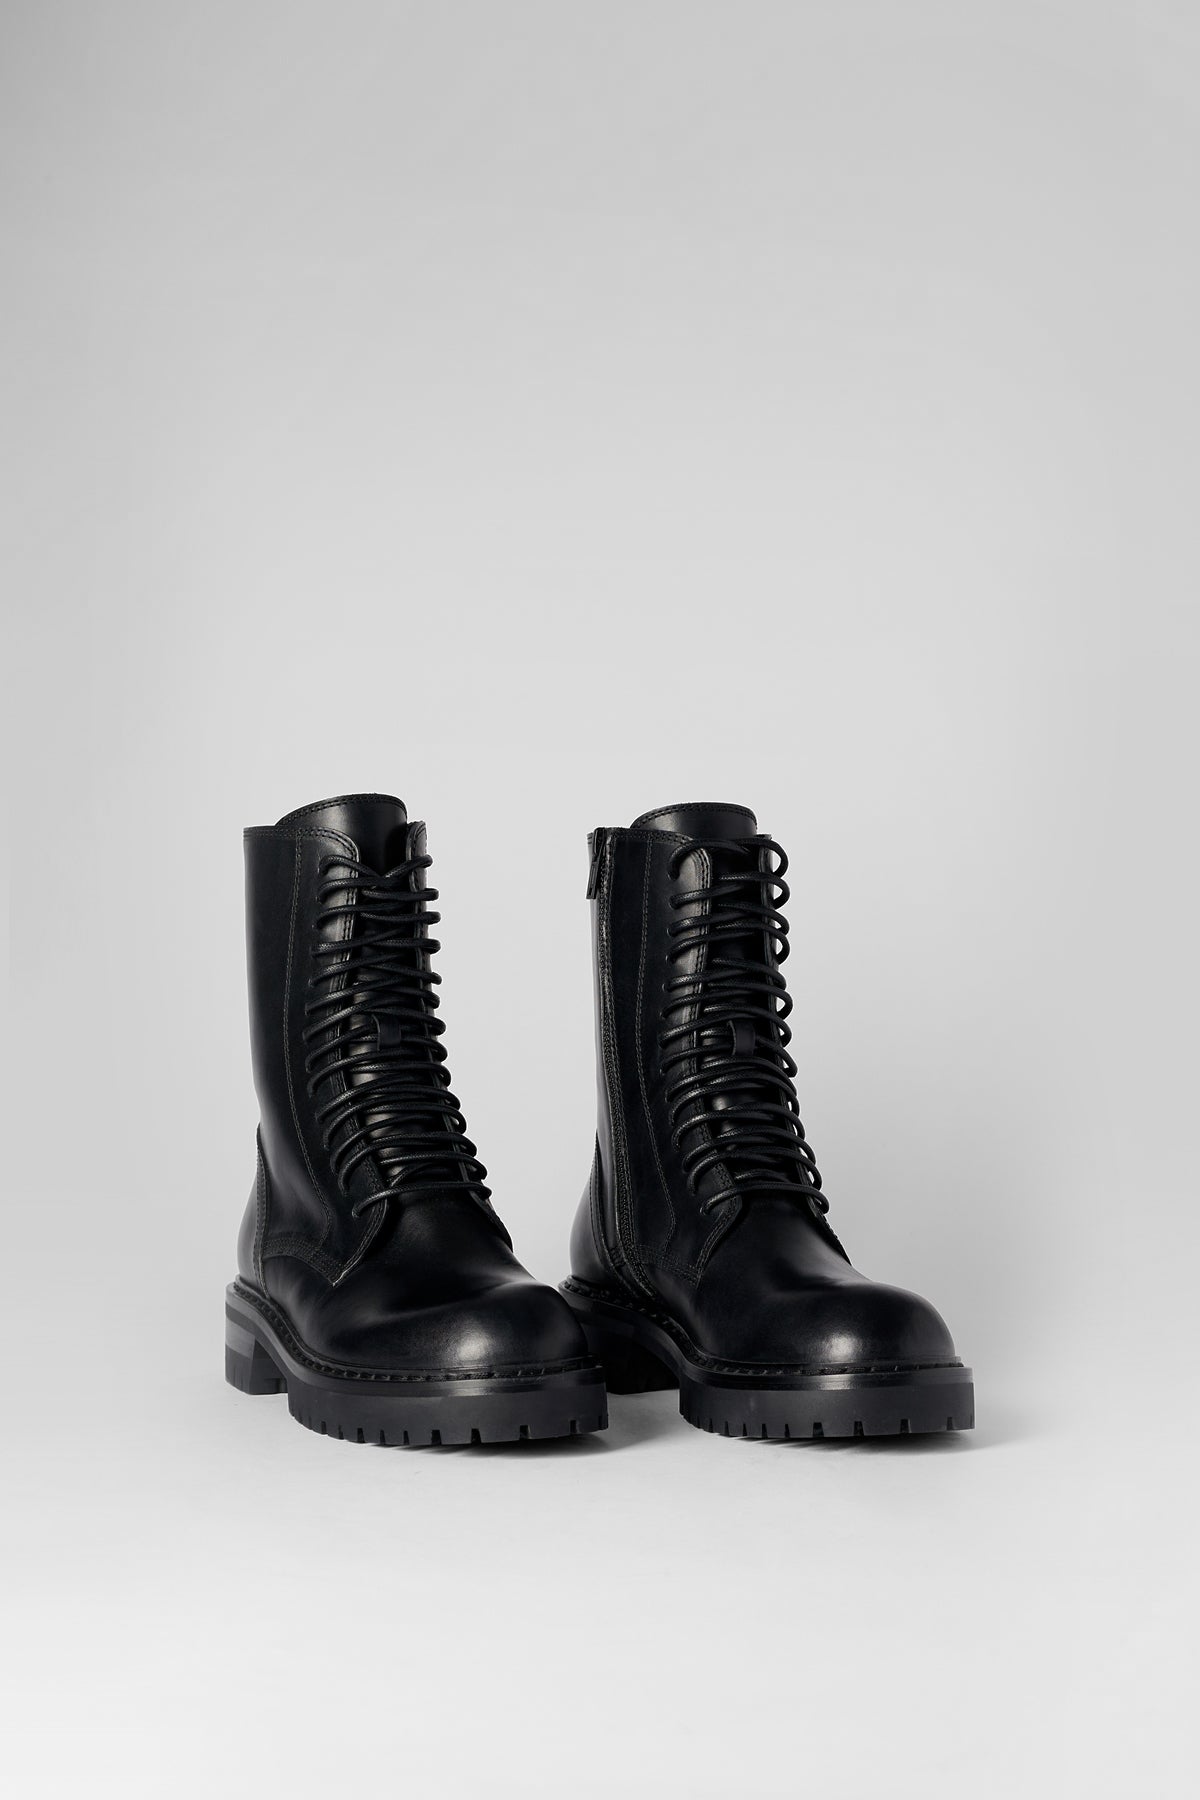 Boots Collection - Ann Demeulemeester – Ann Demeulemeester JP